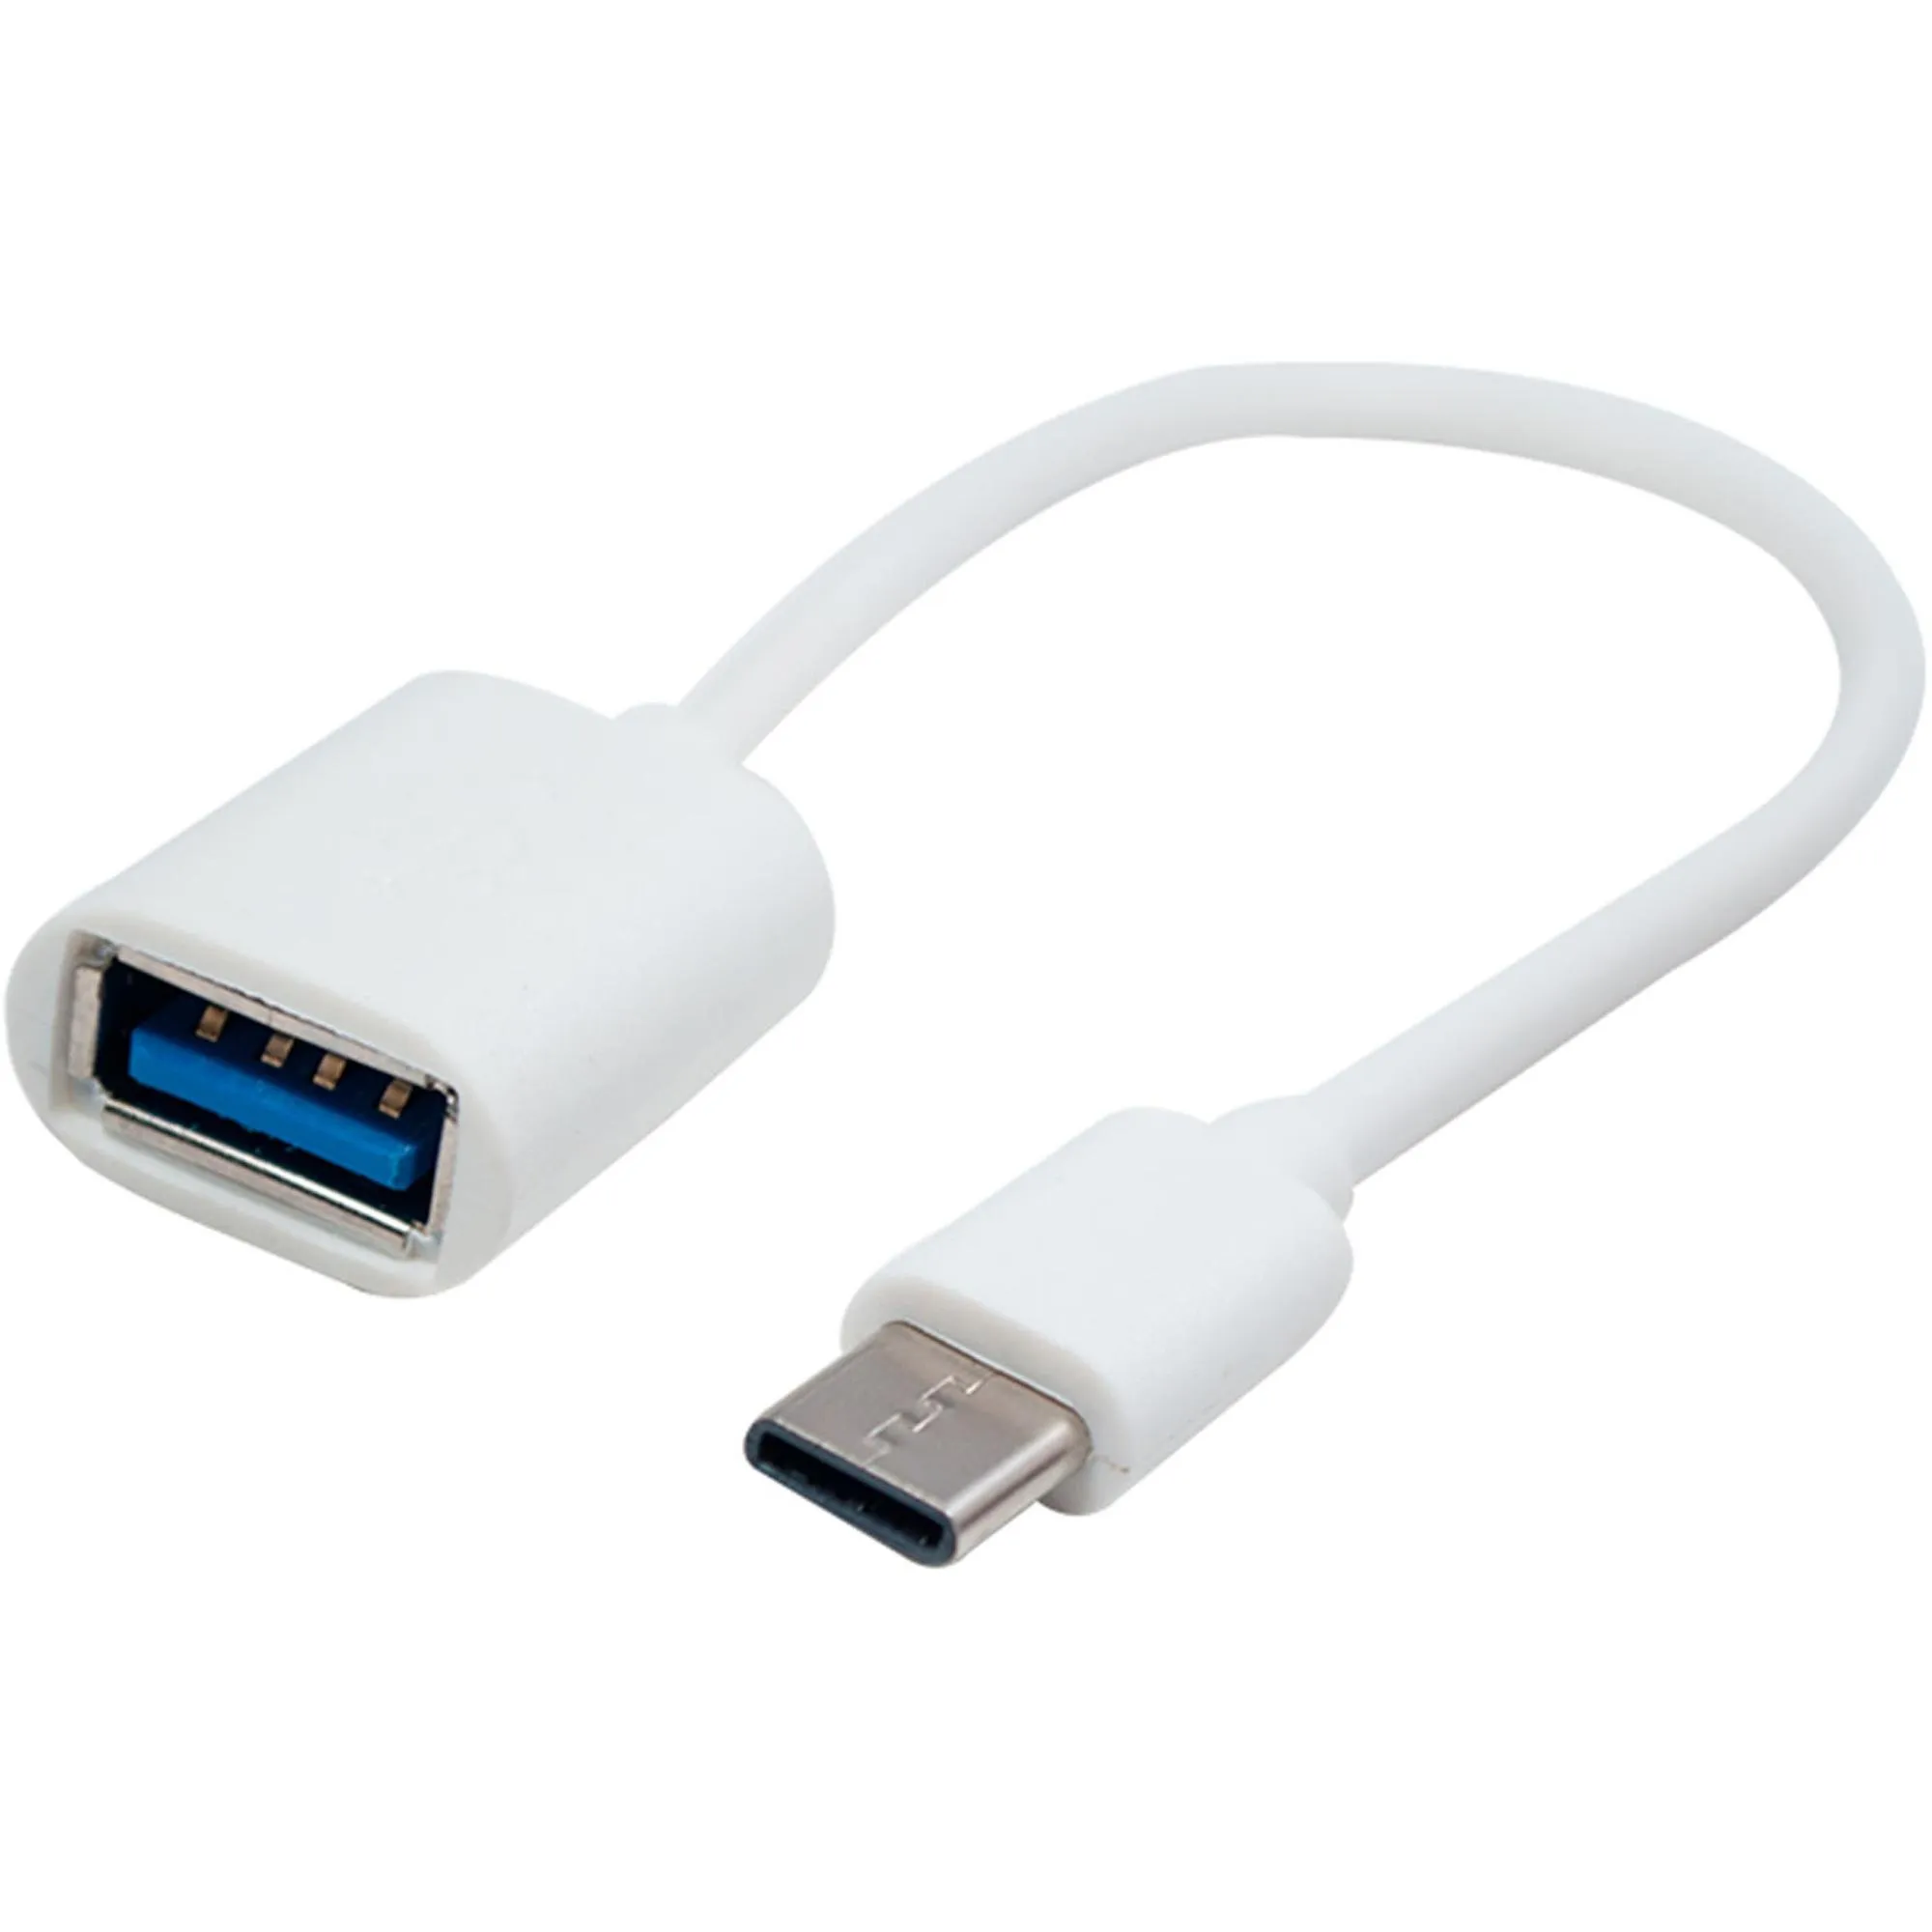 Cabo Flat USB/USB Tipo C Branco Flex por 14,99 à vista no boleto/pix ou parcele em até 1x sem juros. Compre na loja Mundomax!